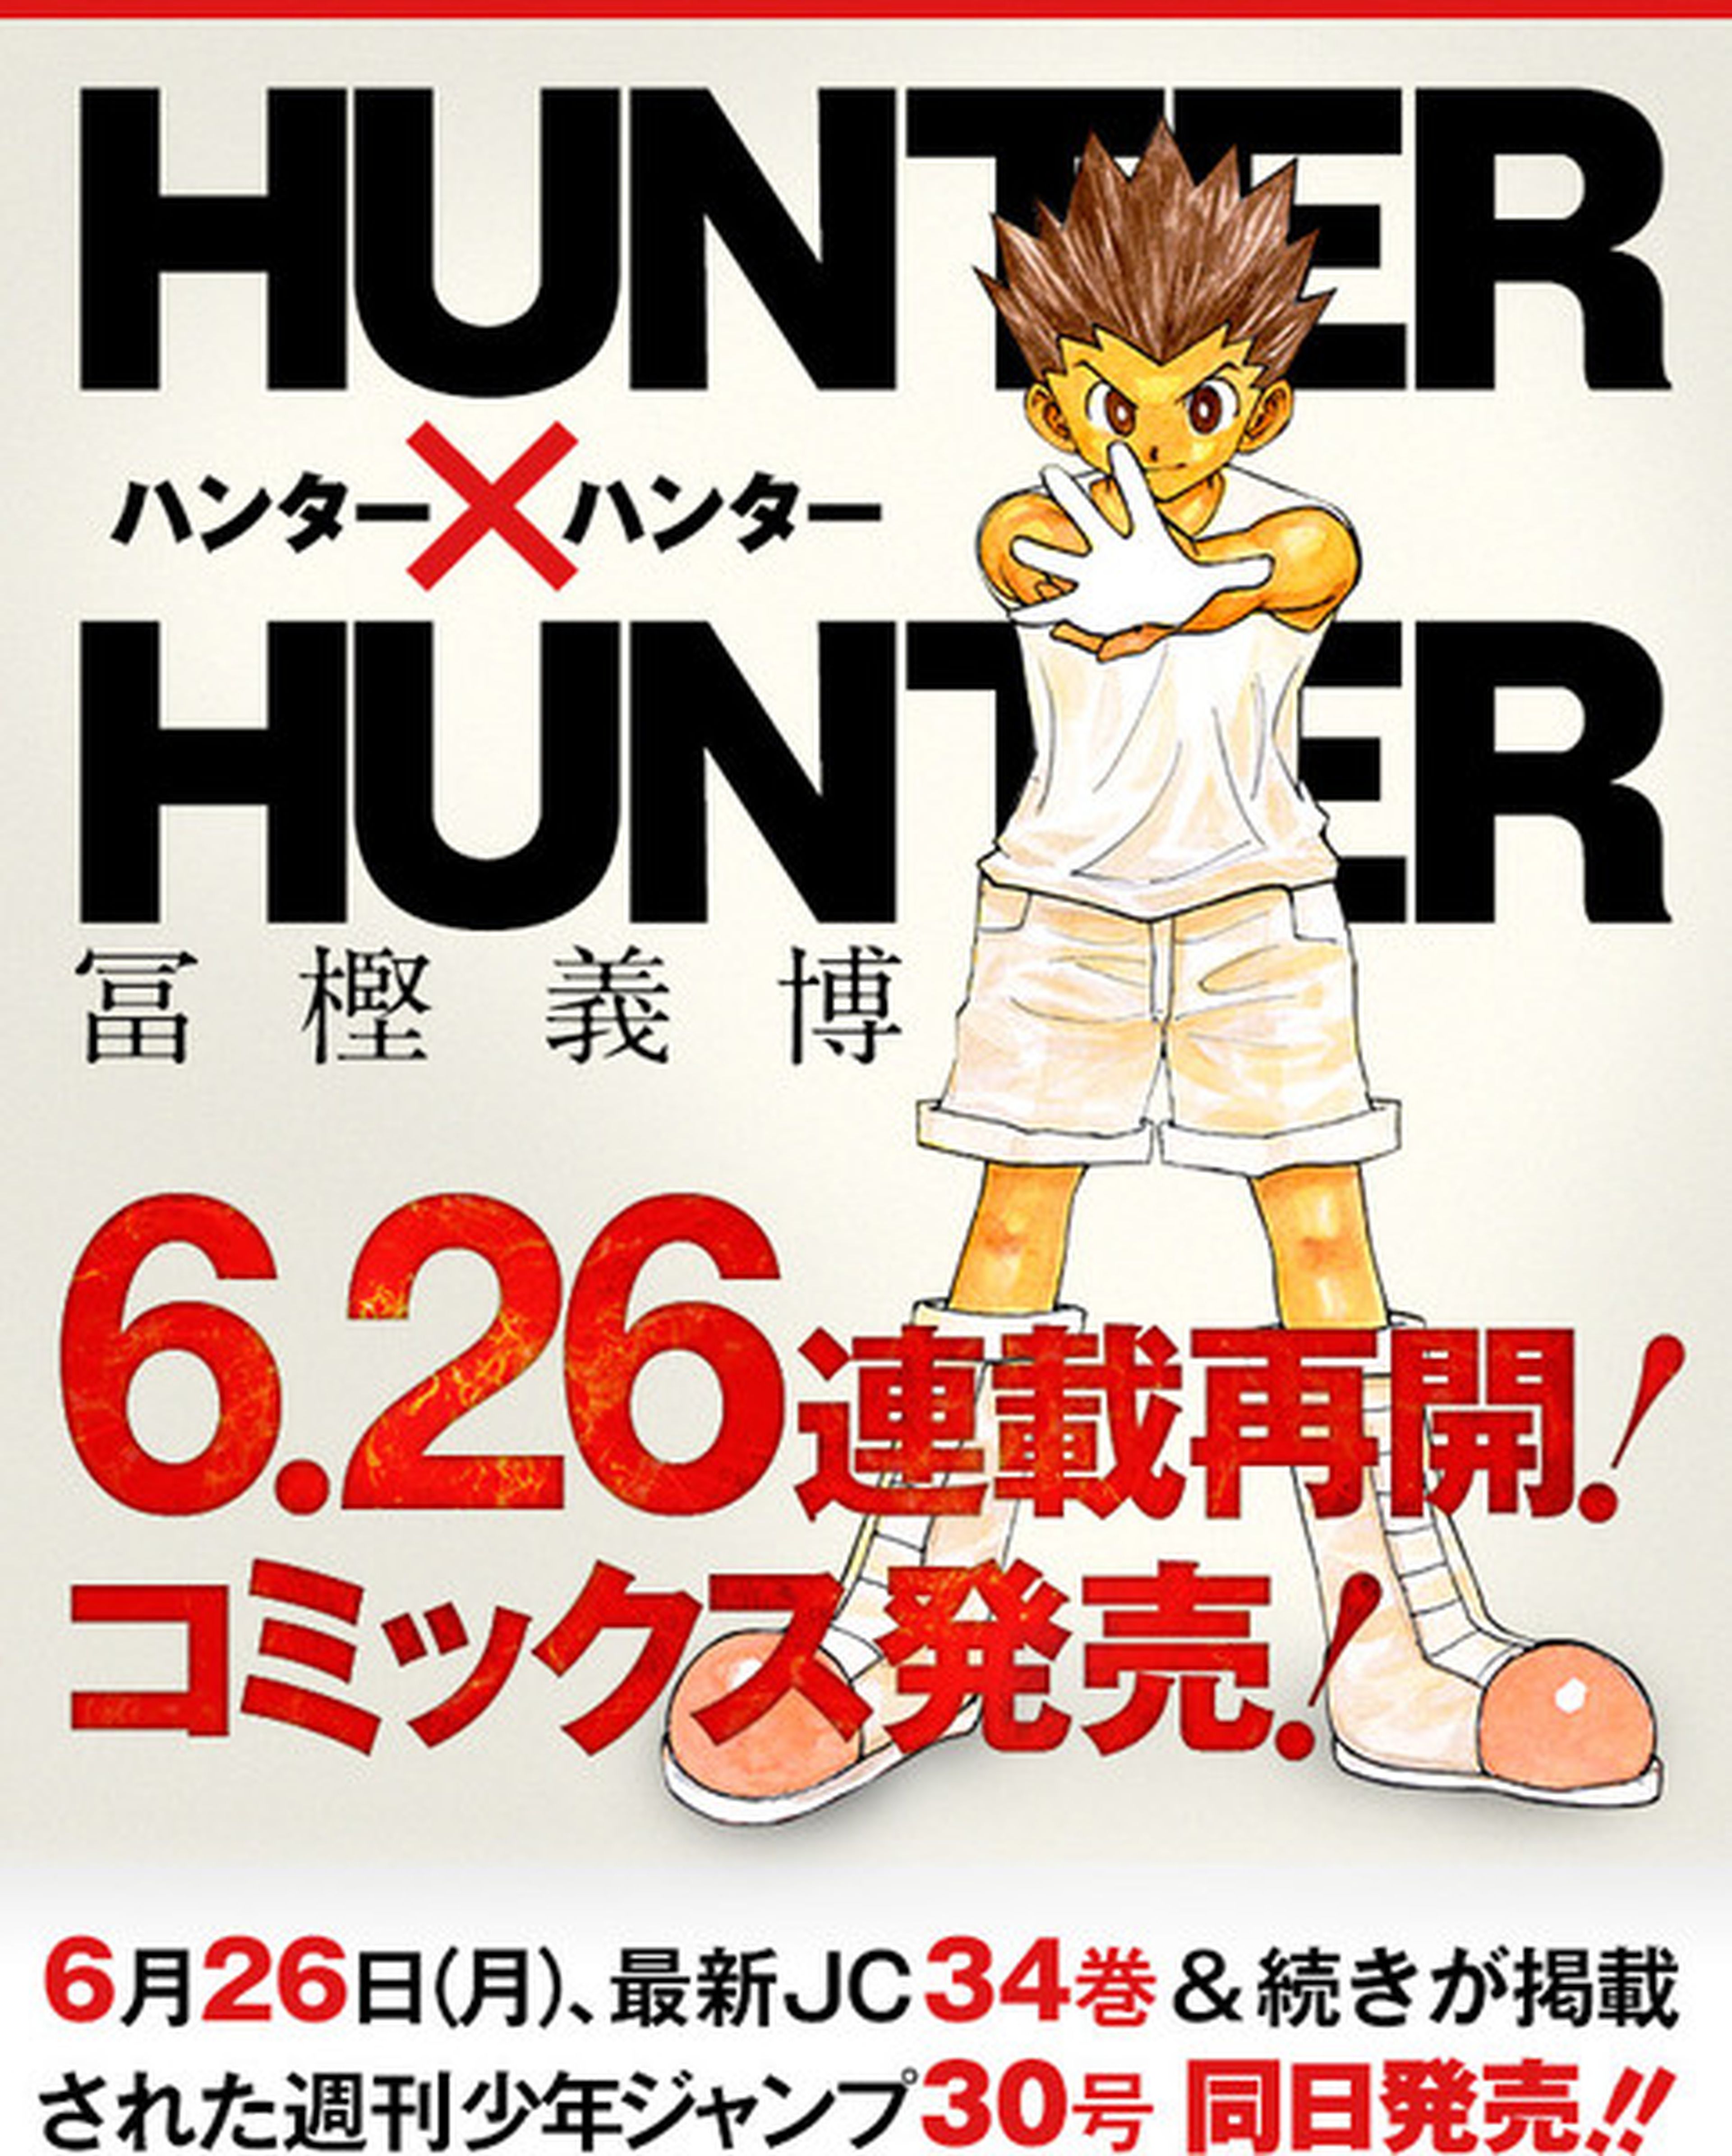 Hunter x Hunter vuelve el 26 de junio con un nuevo episodio Hobby